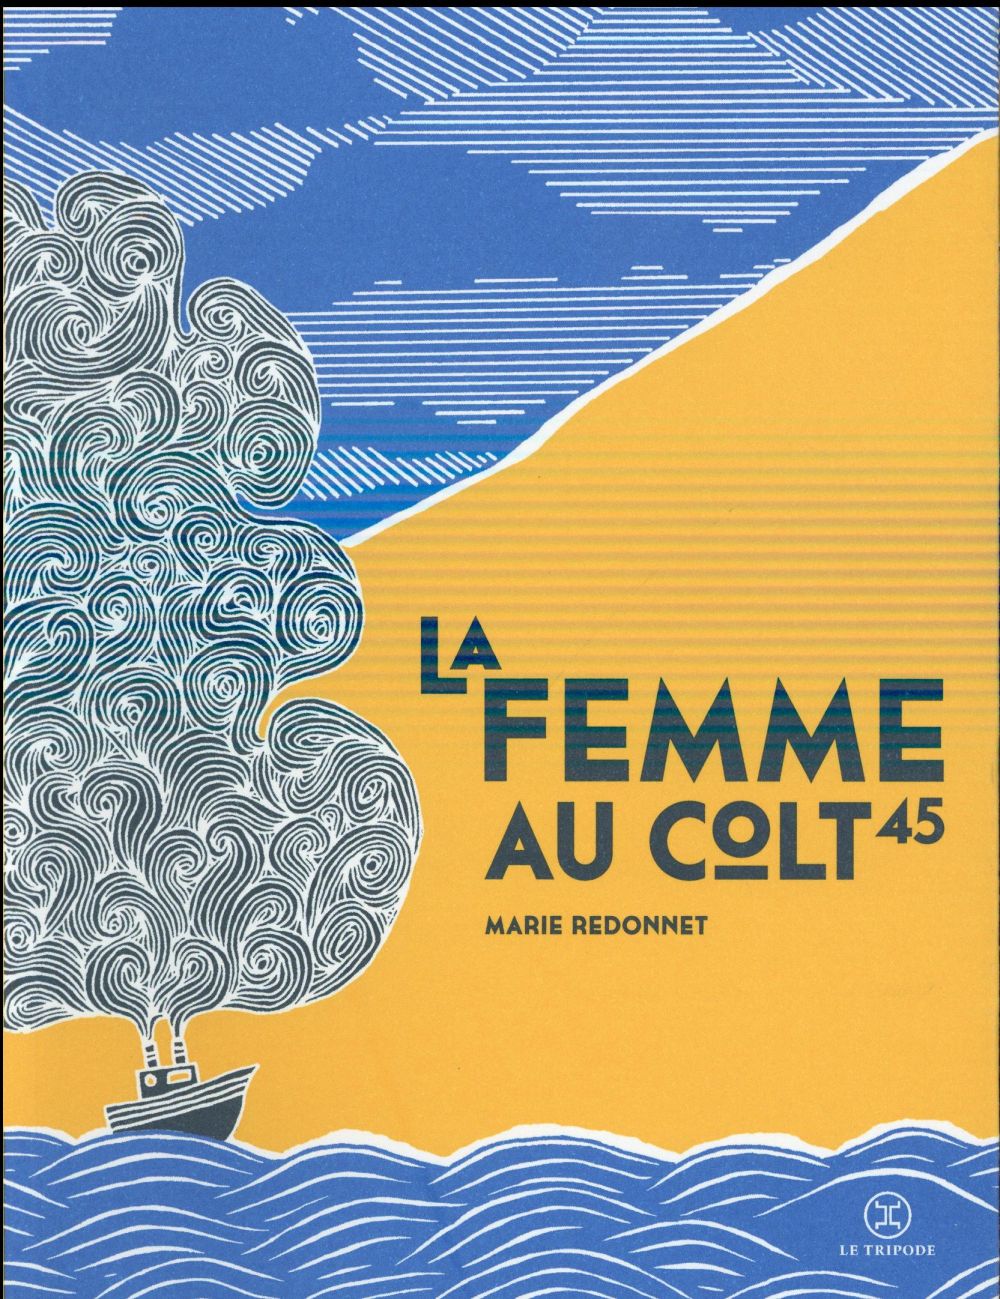 [Chronique] #59 Club des Explorateurs : "La femme au colt 45" de Marie Redonnet